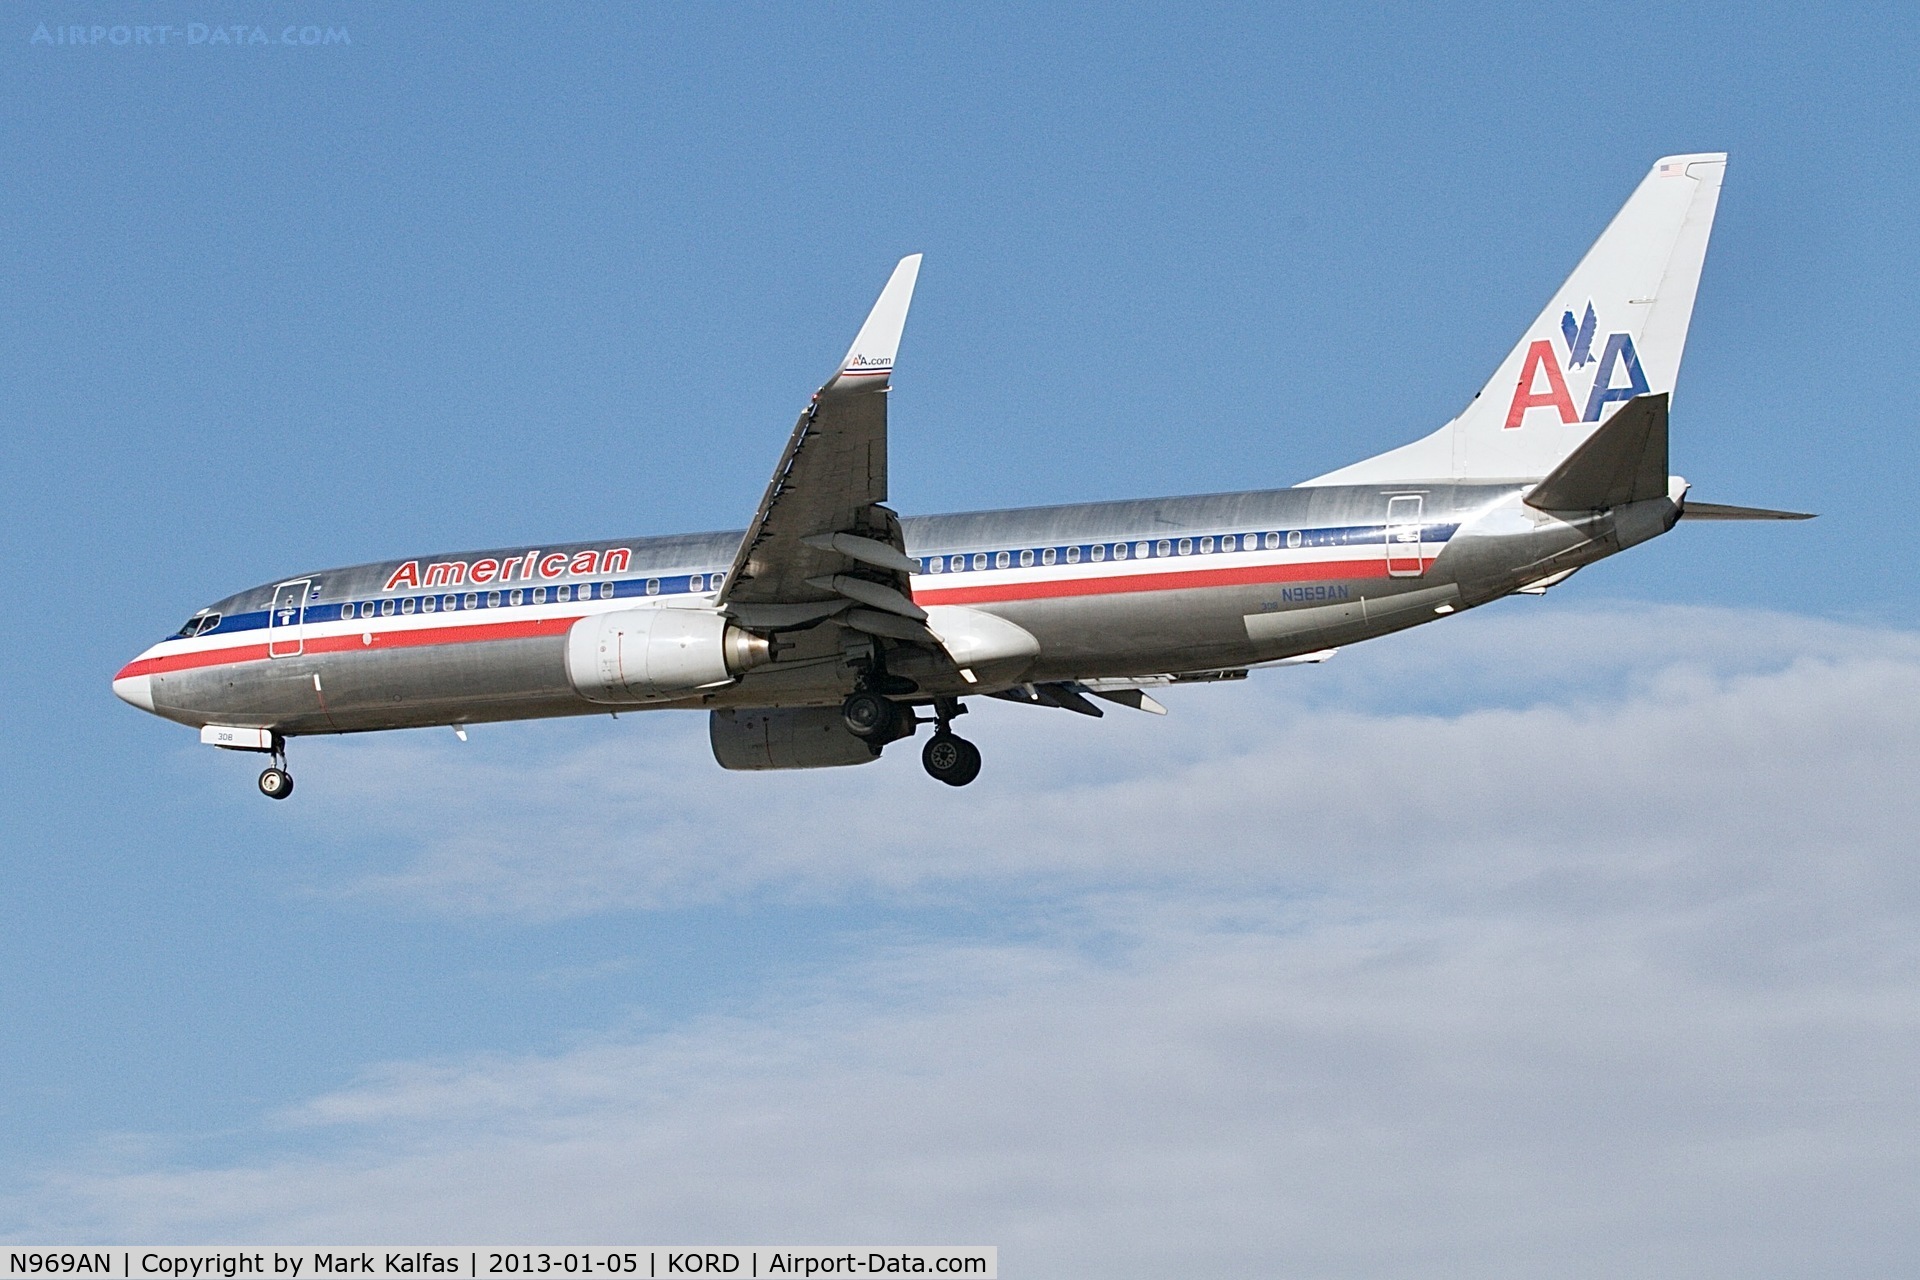 N969AN, 2001 Boeing 737-823 C/N 29546, American Airlines Boeing 737-823 N969AN. 28L approach KORD